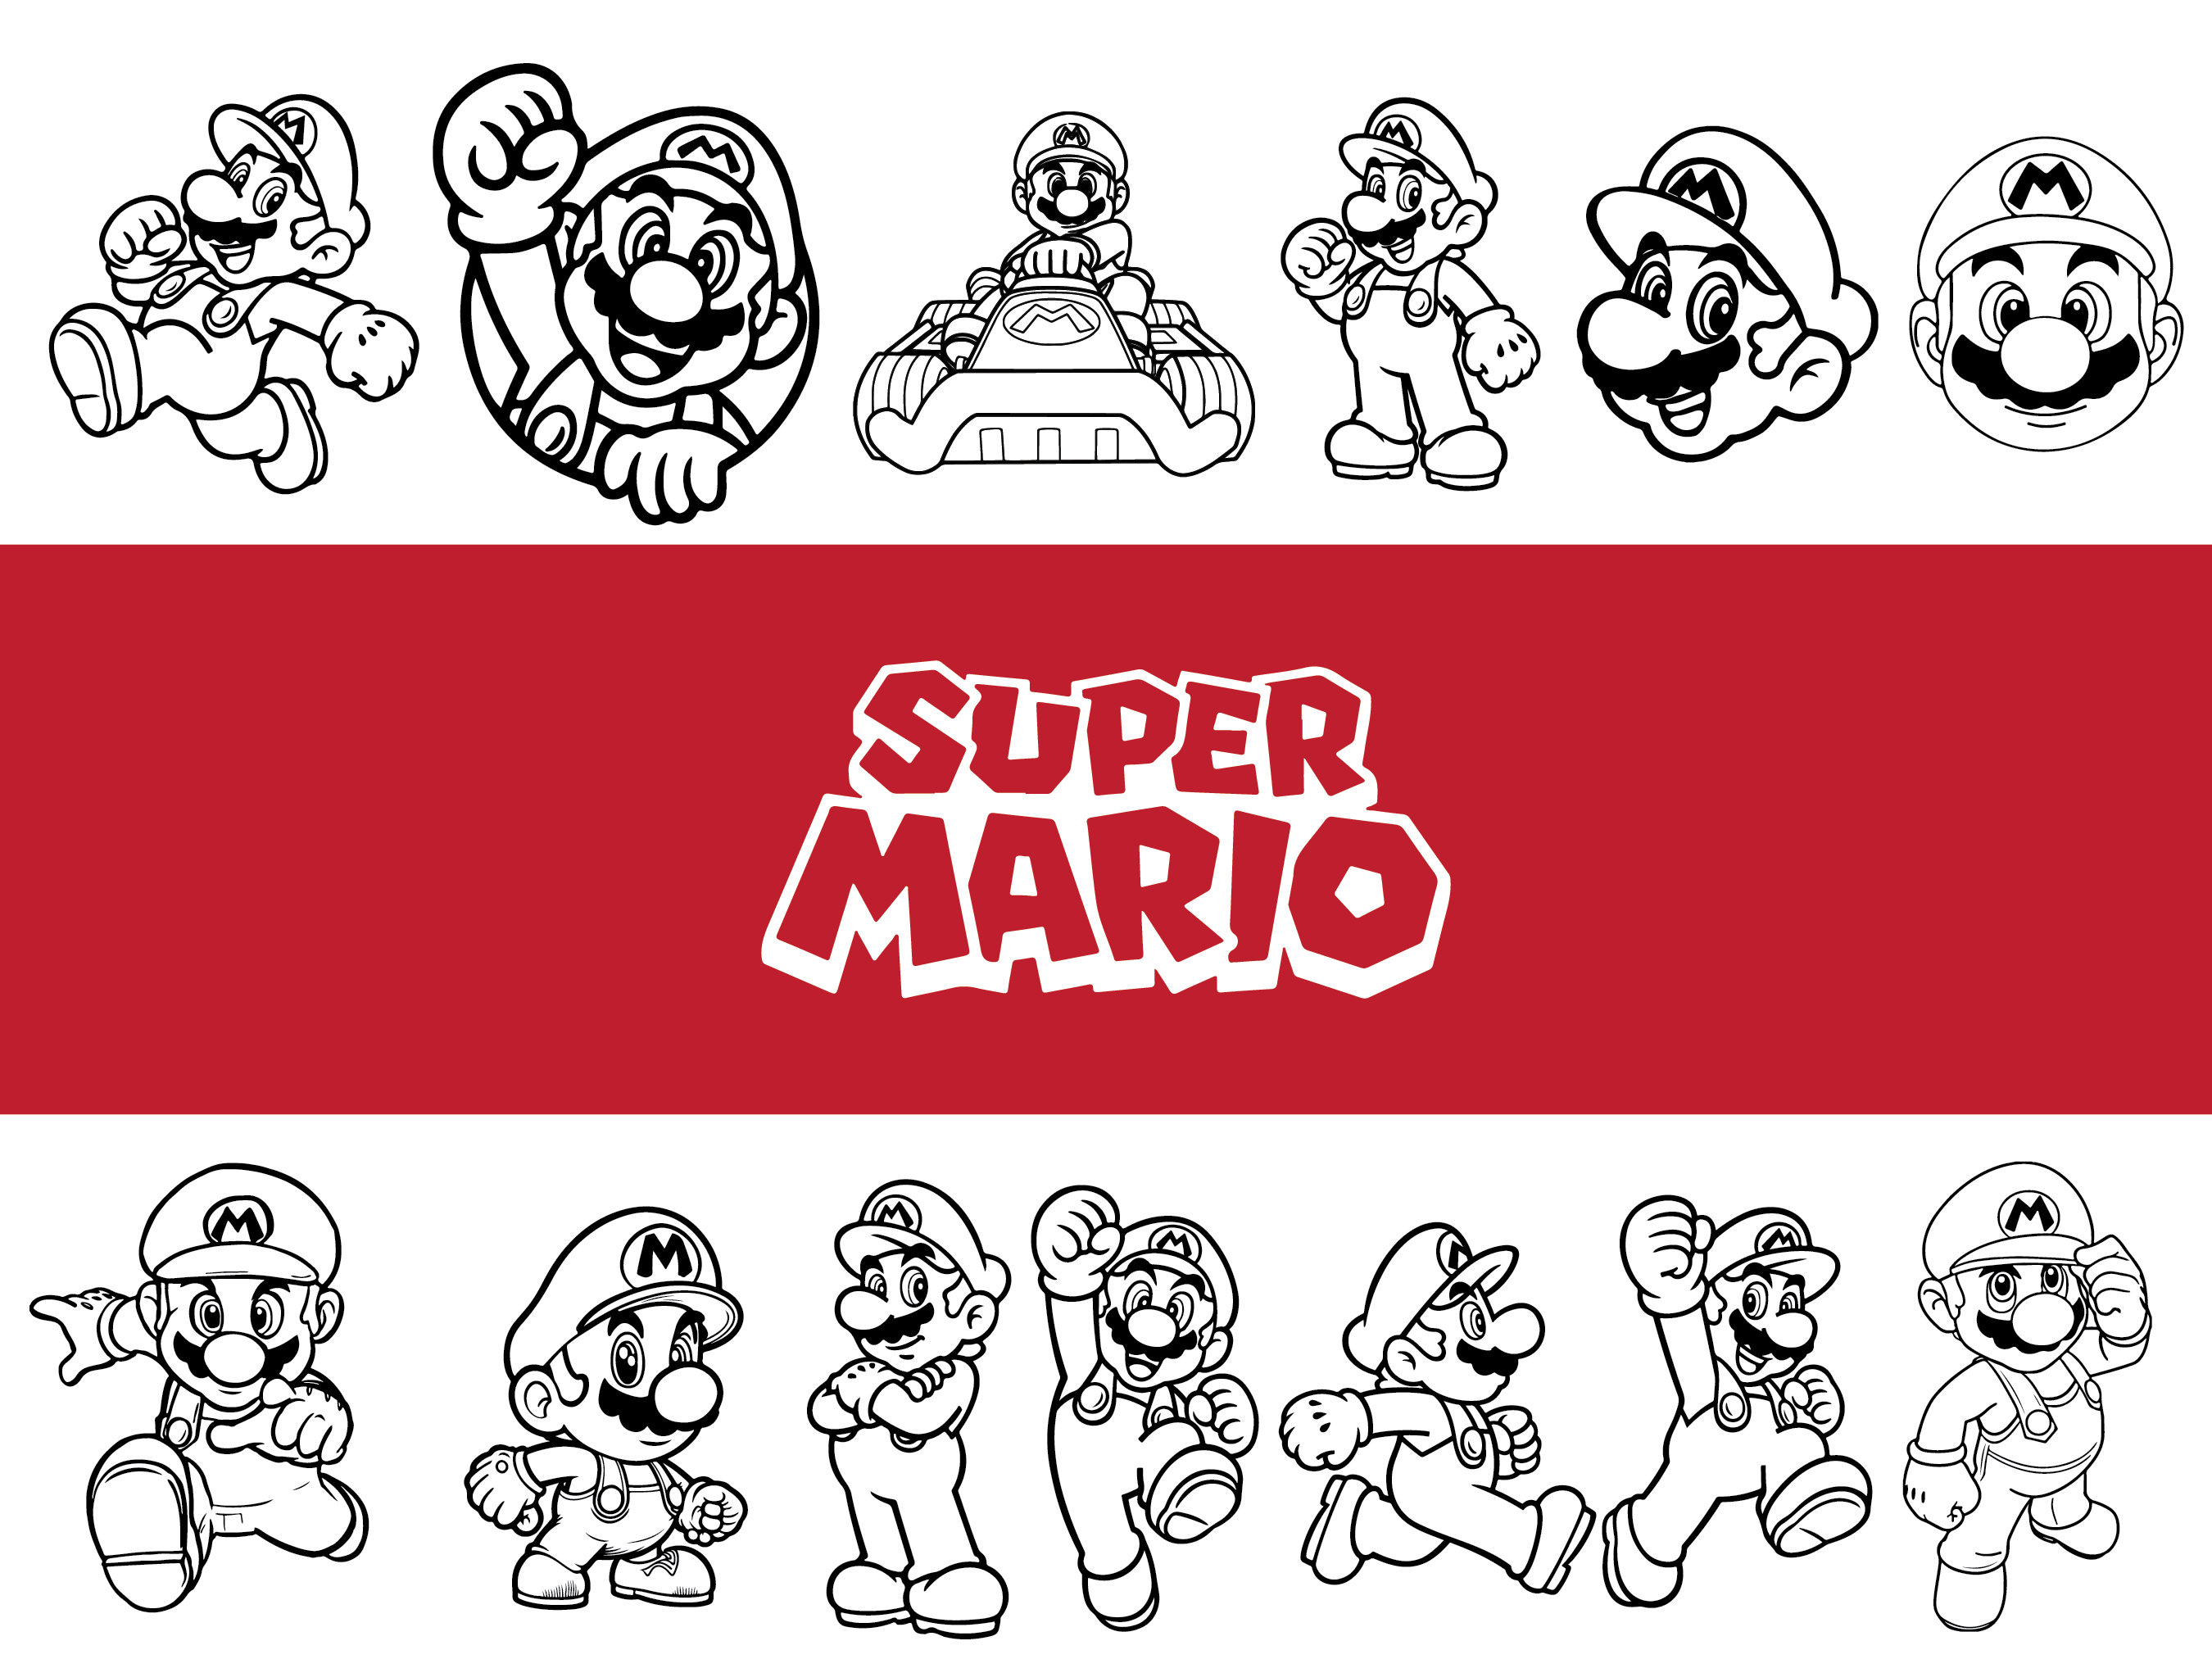 Mario SVG Bundle: Mario Characters Svg Super Mario Svg Mario 